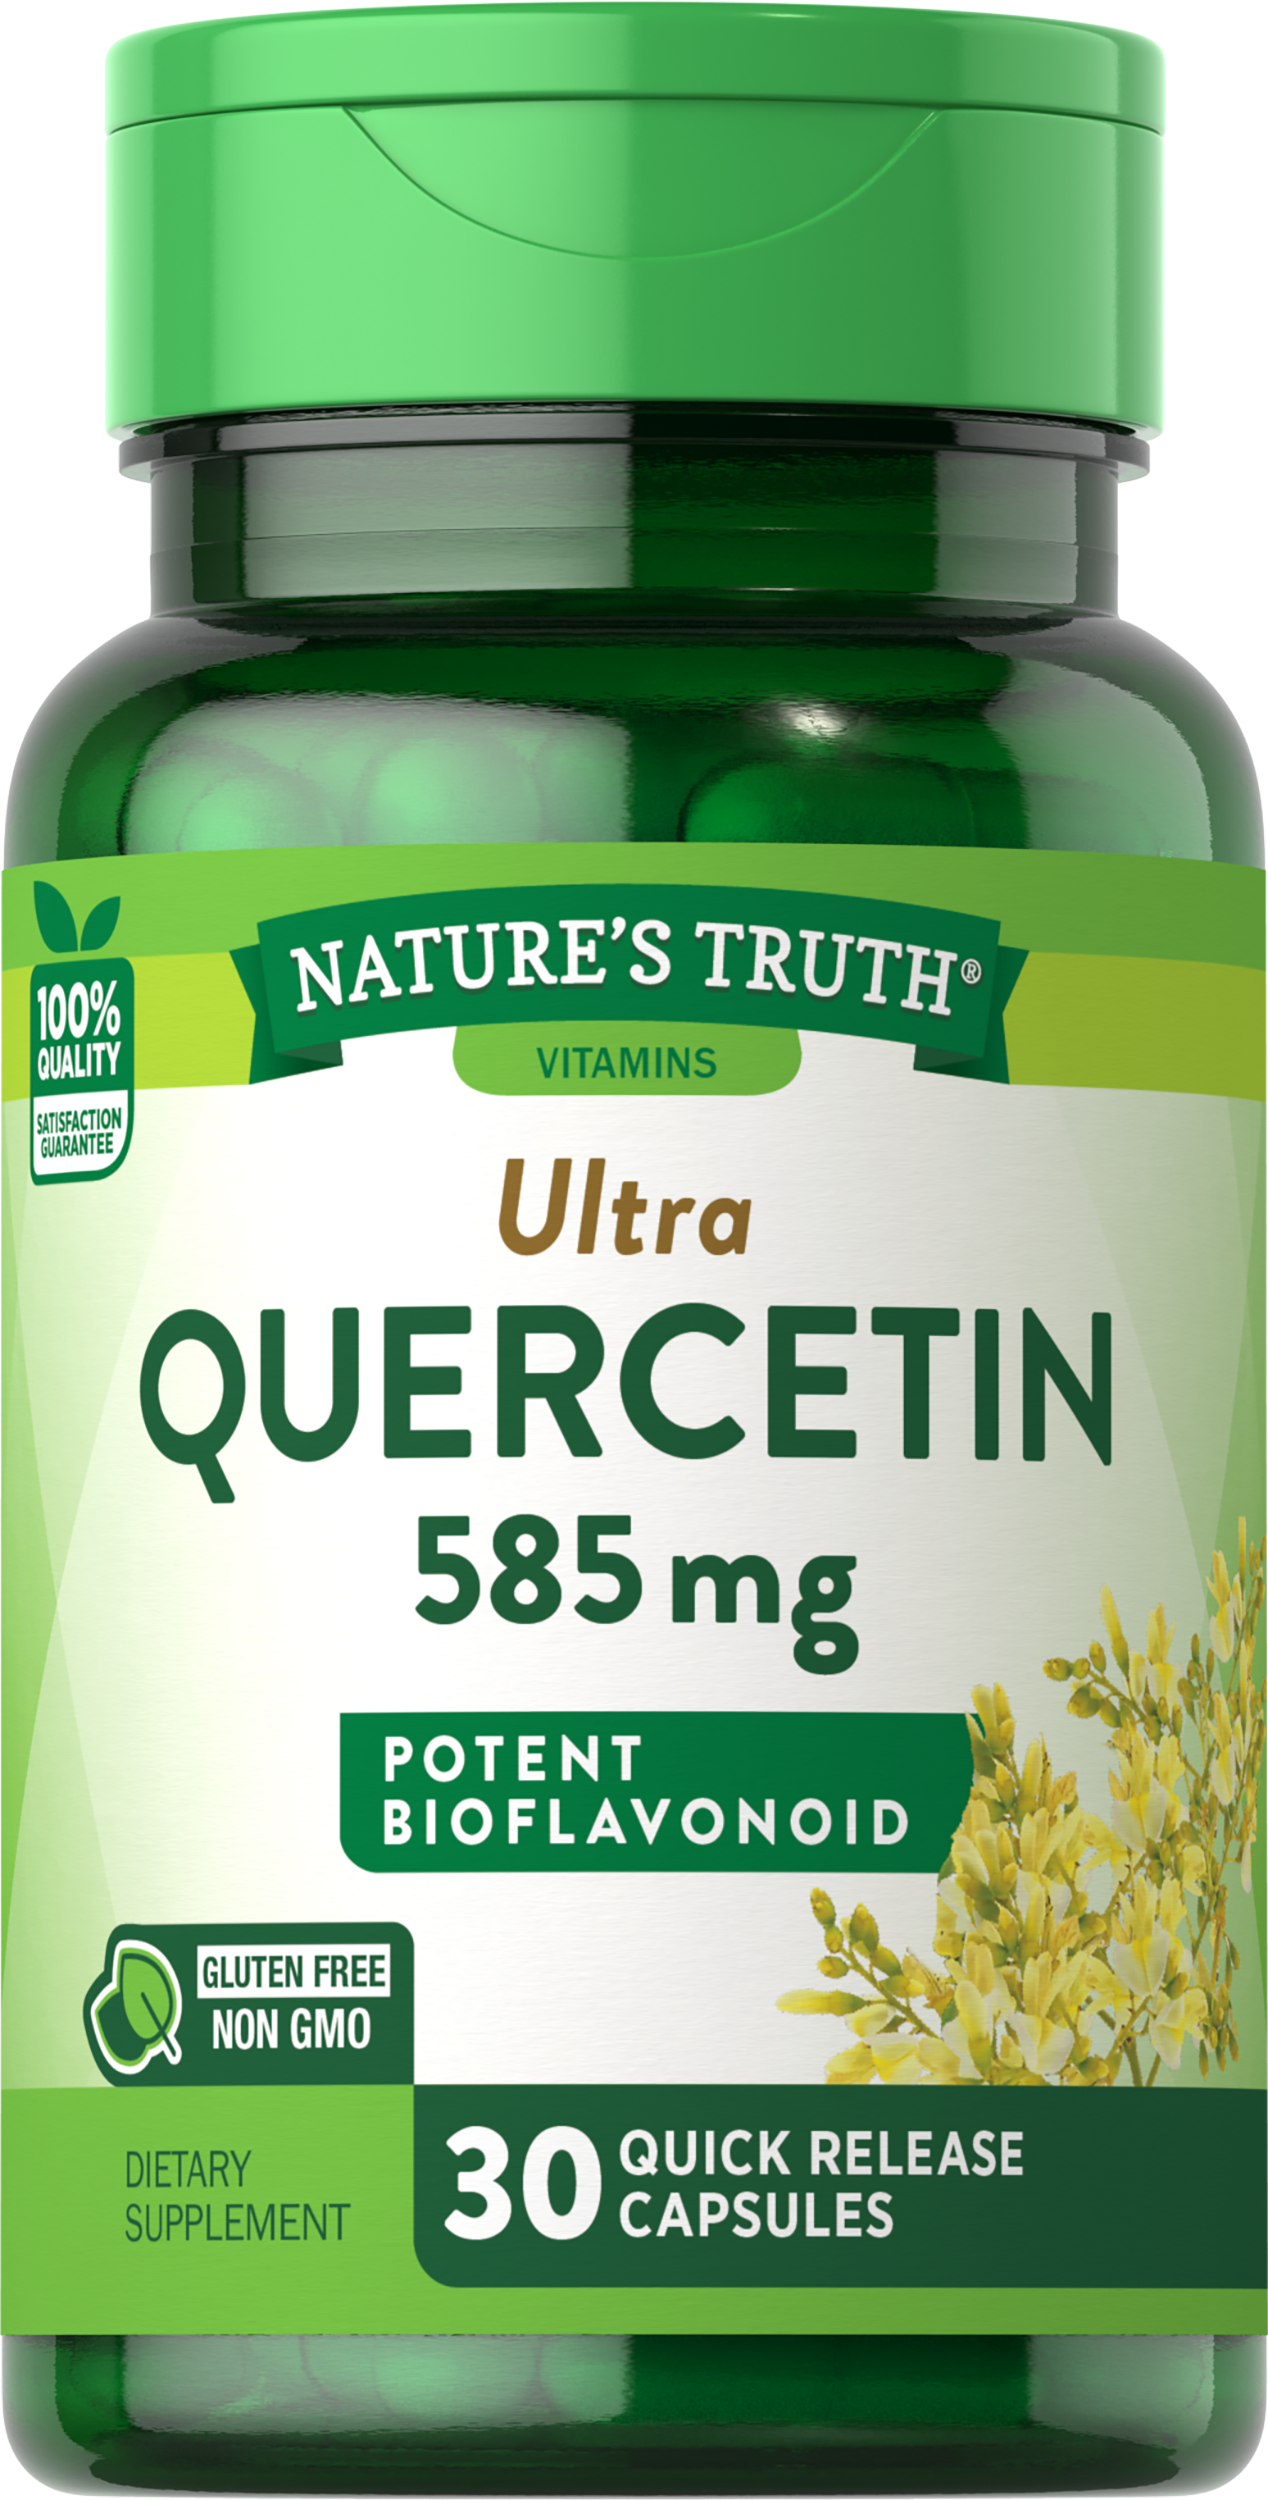 Quercetin 585 mg